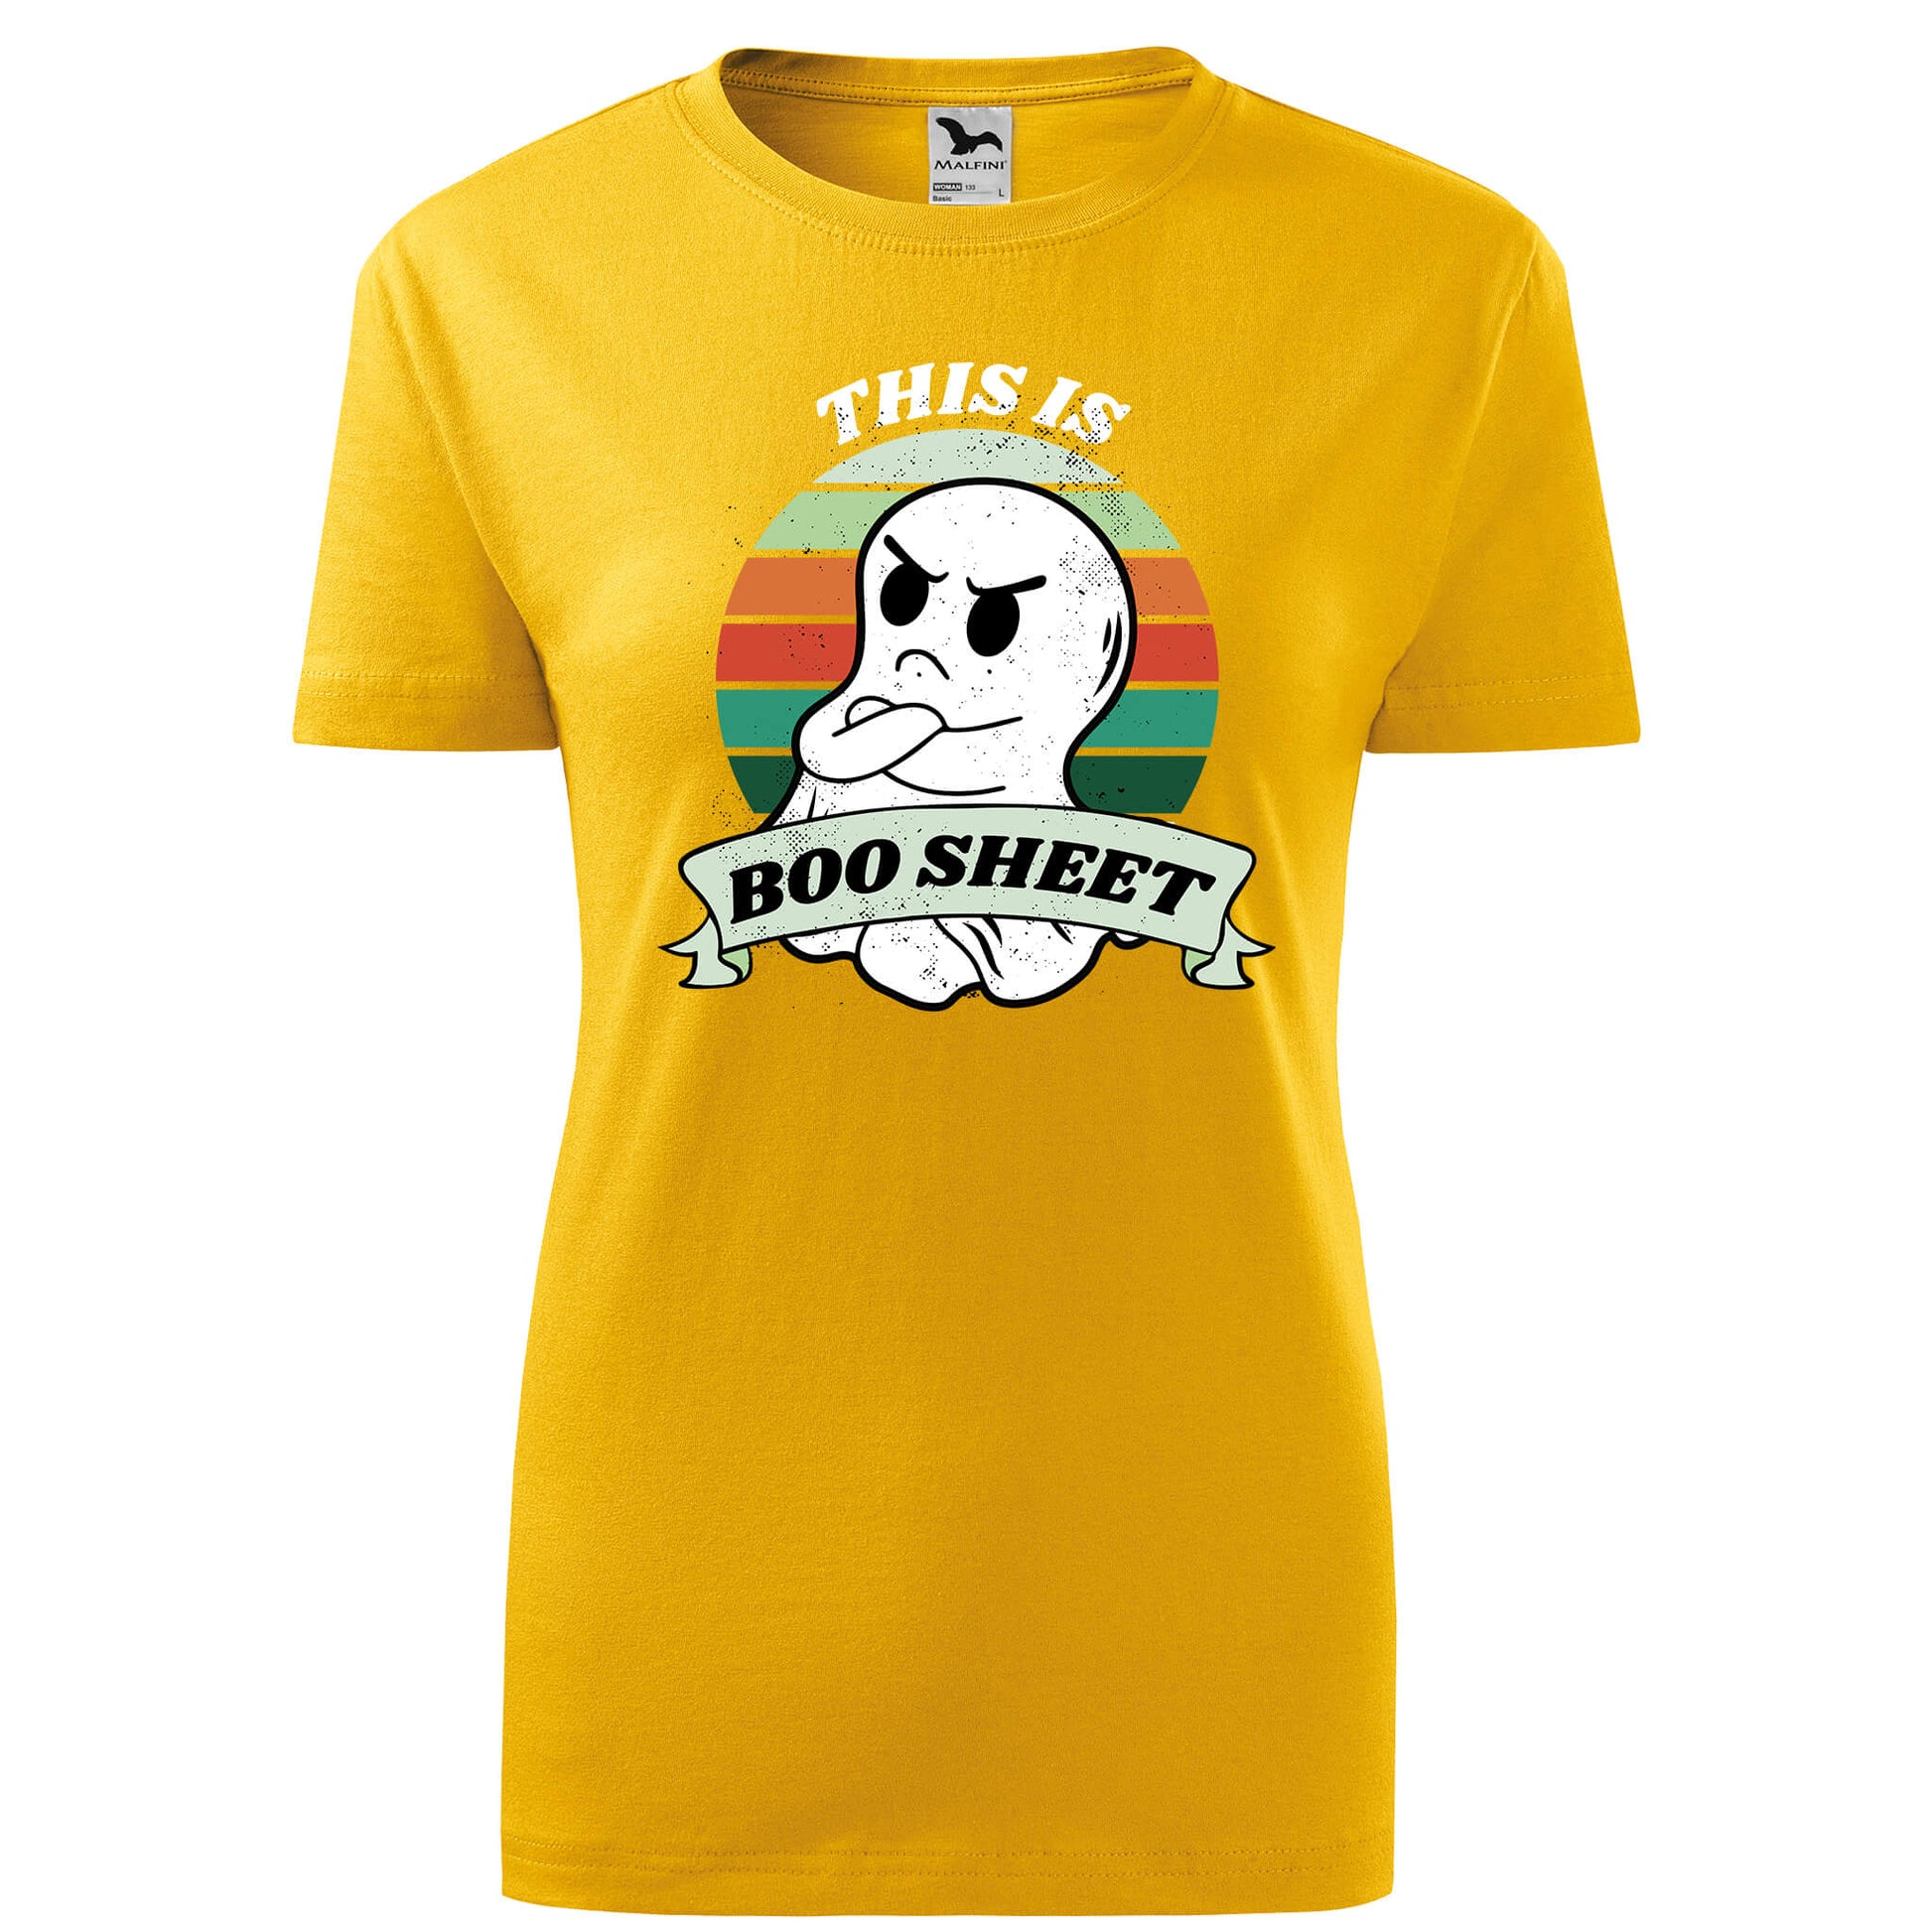 Boo sheet t-shirt - rvdesignprint